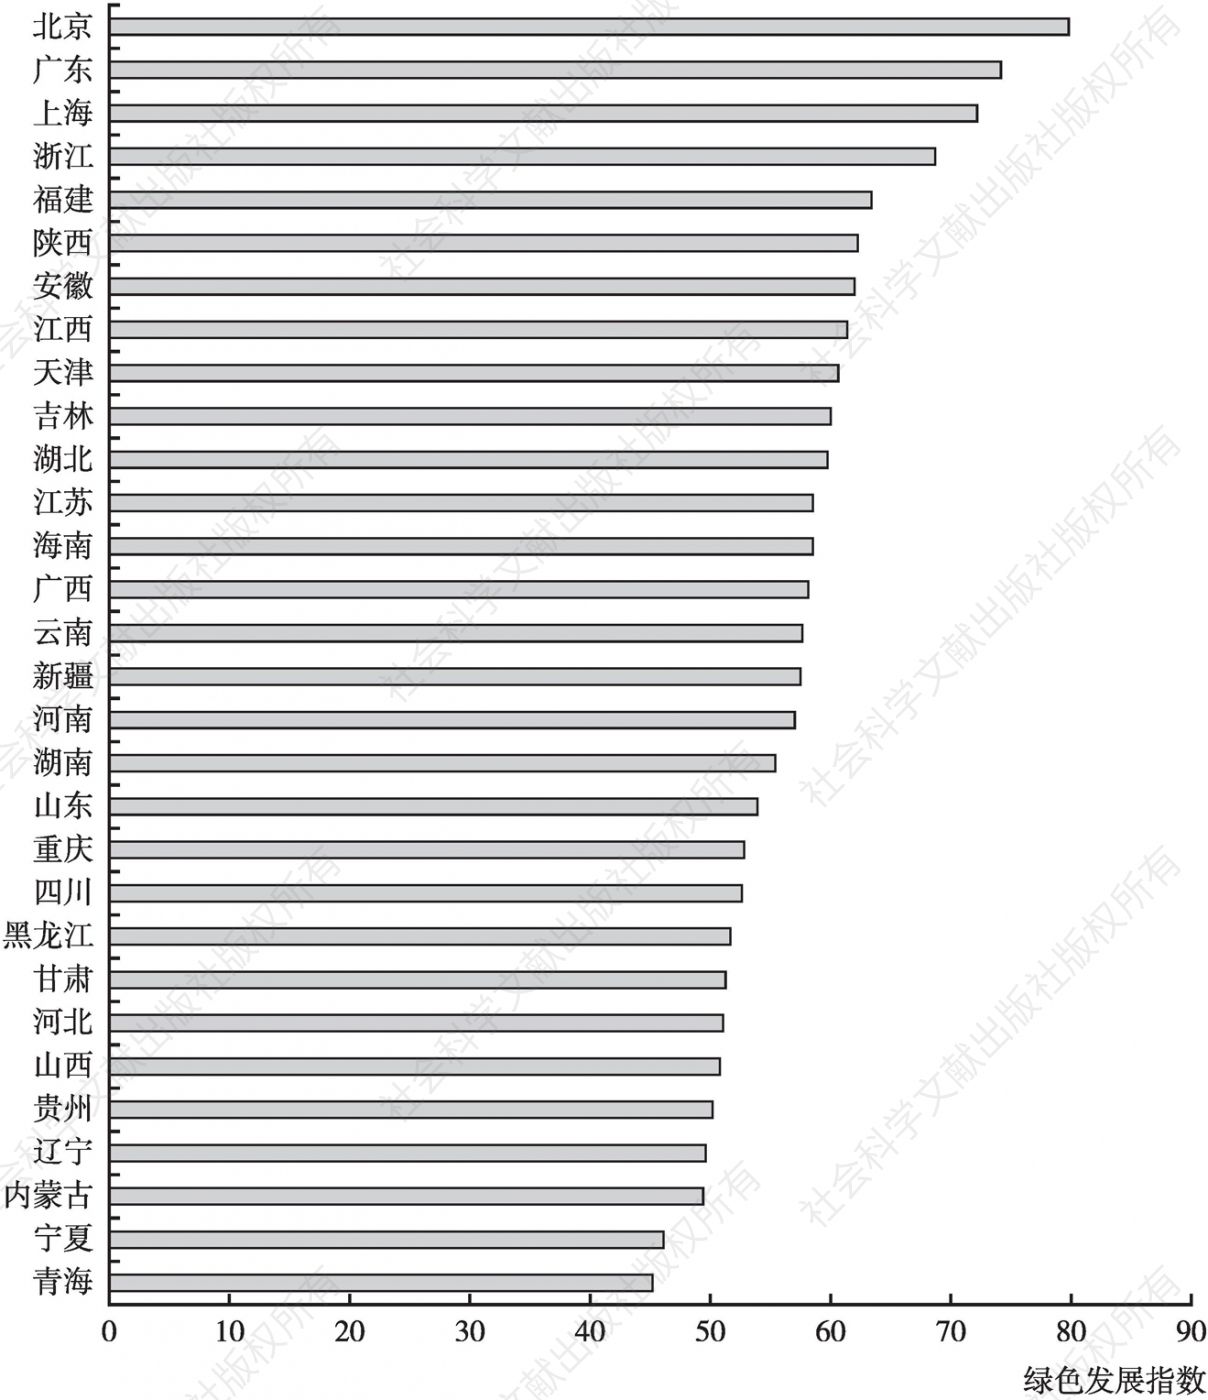 图5 2011～2019年中国省域绿色发展指数均值